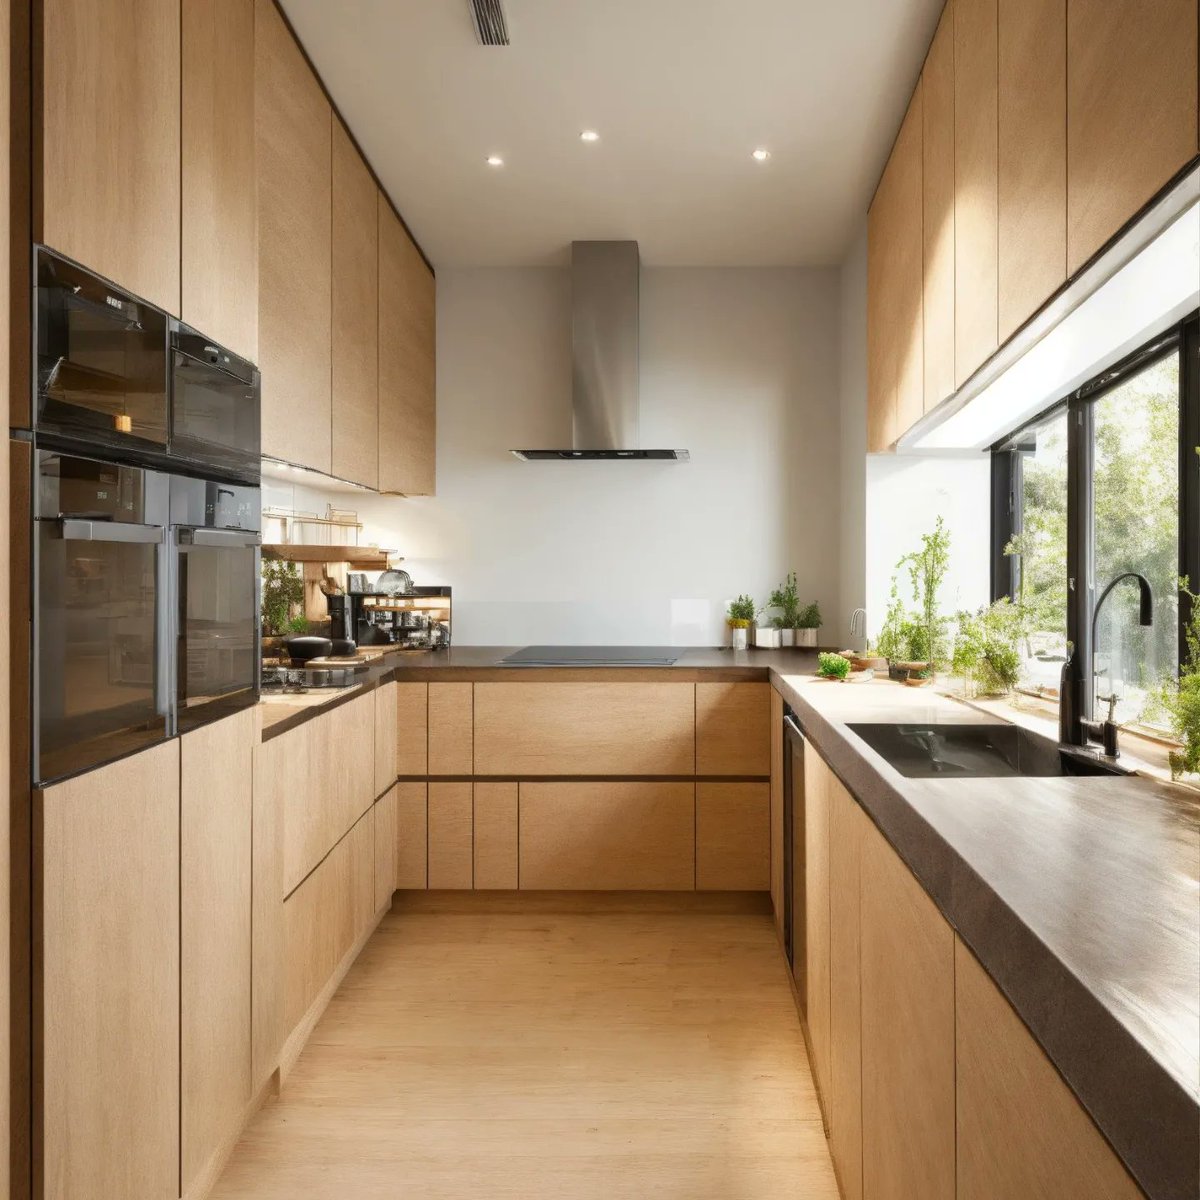 Best designs for your kitchen 🏡✨

#KitchenDesign#InteriorDesign#ModernKitchen#ContemporaryKitchen#KitchenDecor#KitchenInspiration#KitchenGoals#DreamKitchen#KitchenRemodel#homedecor